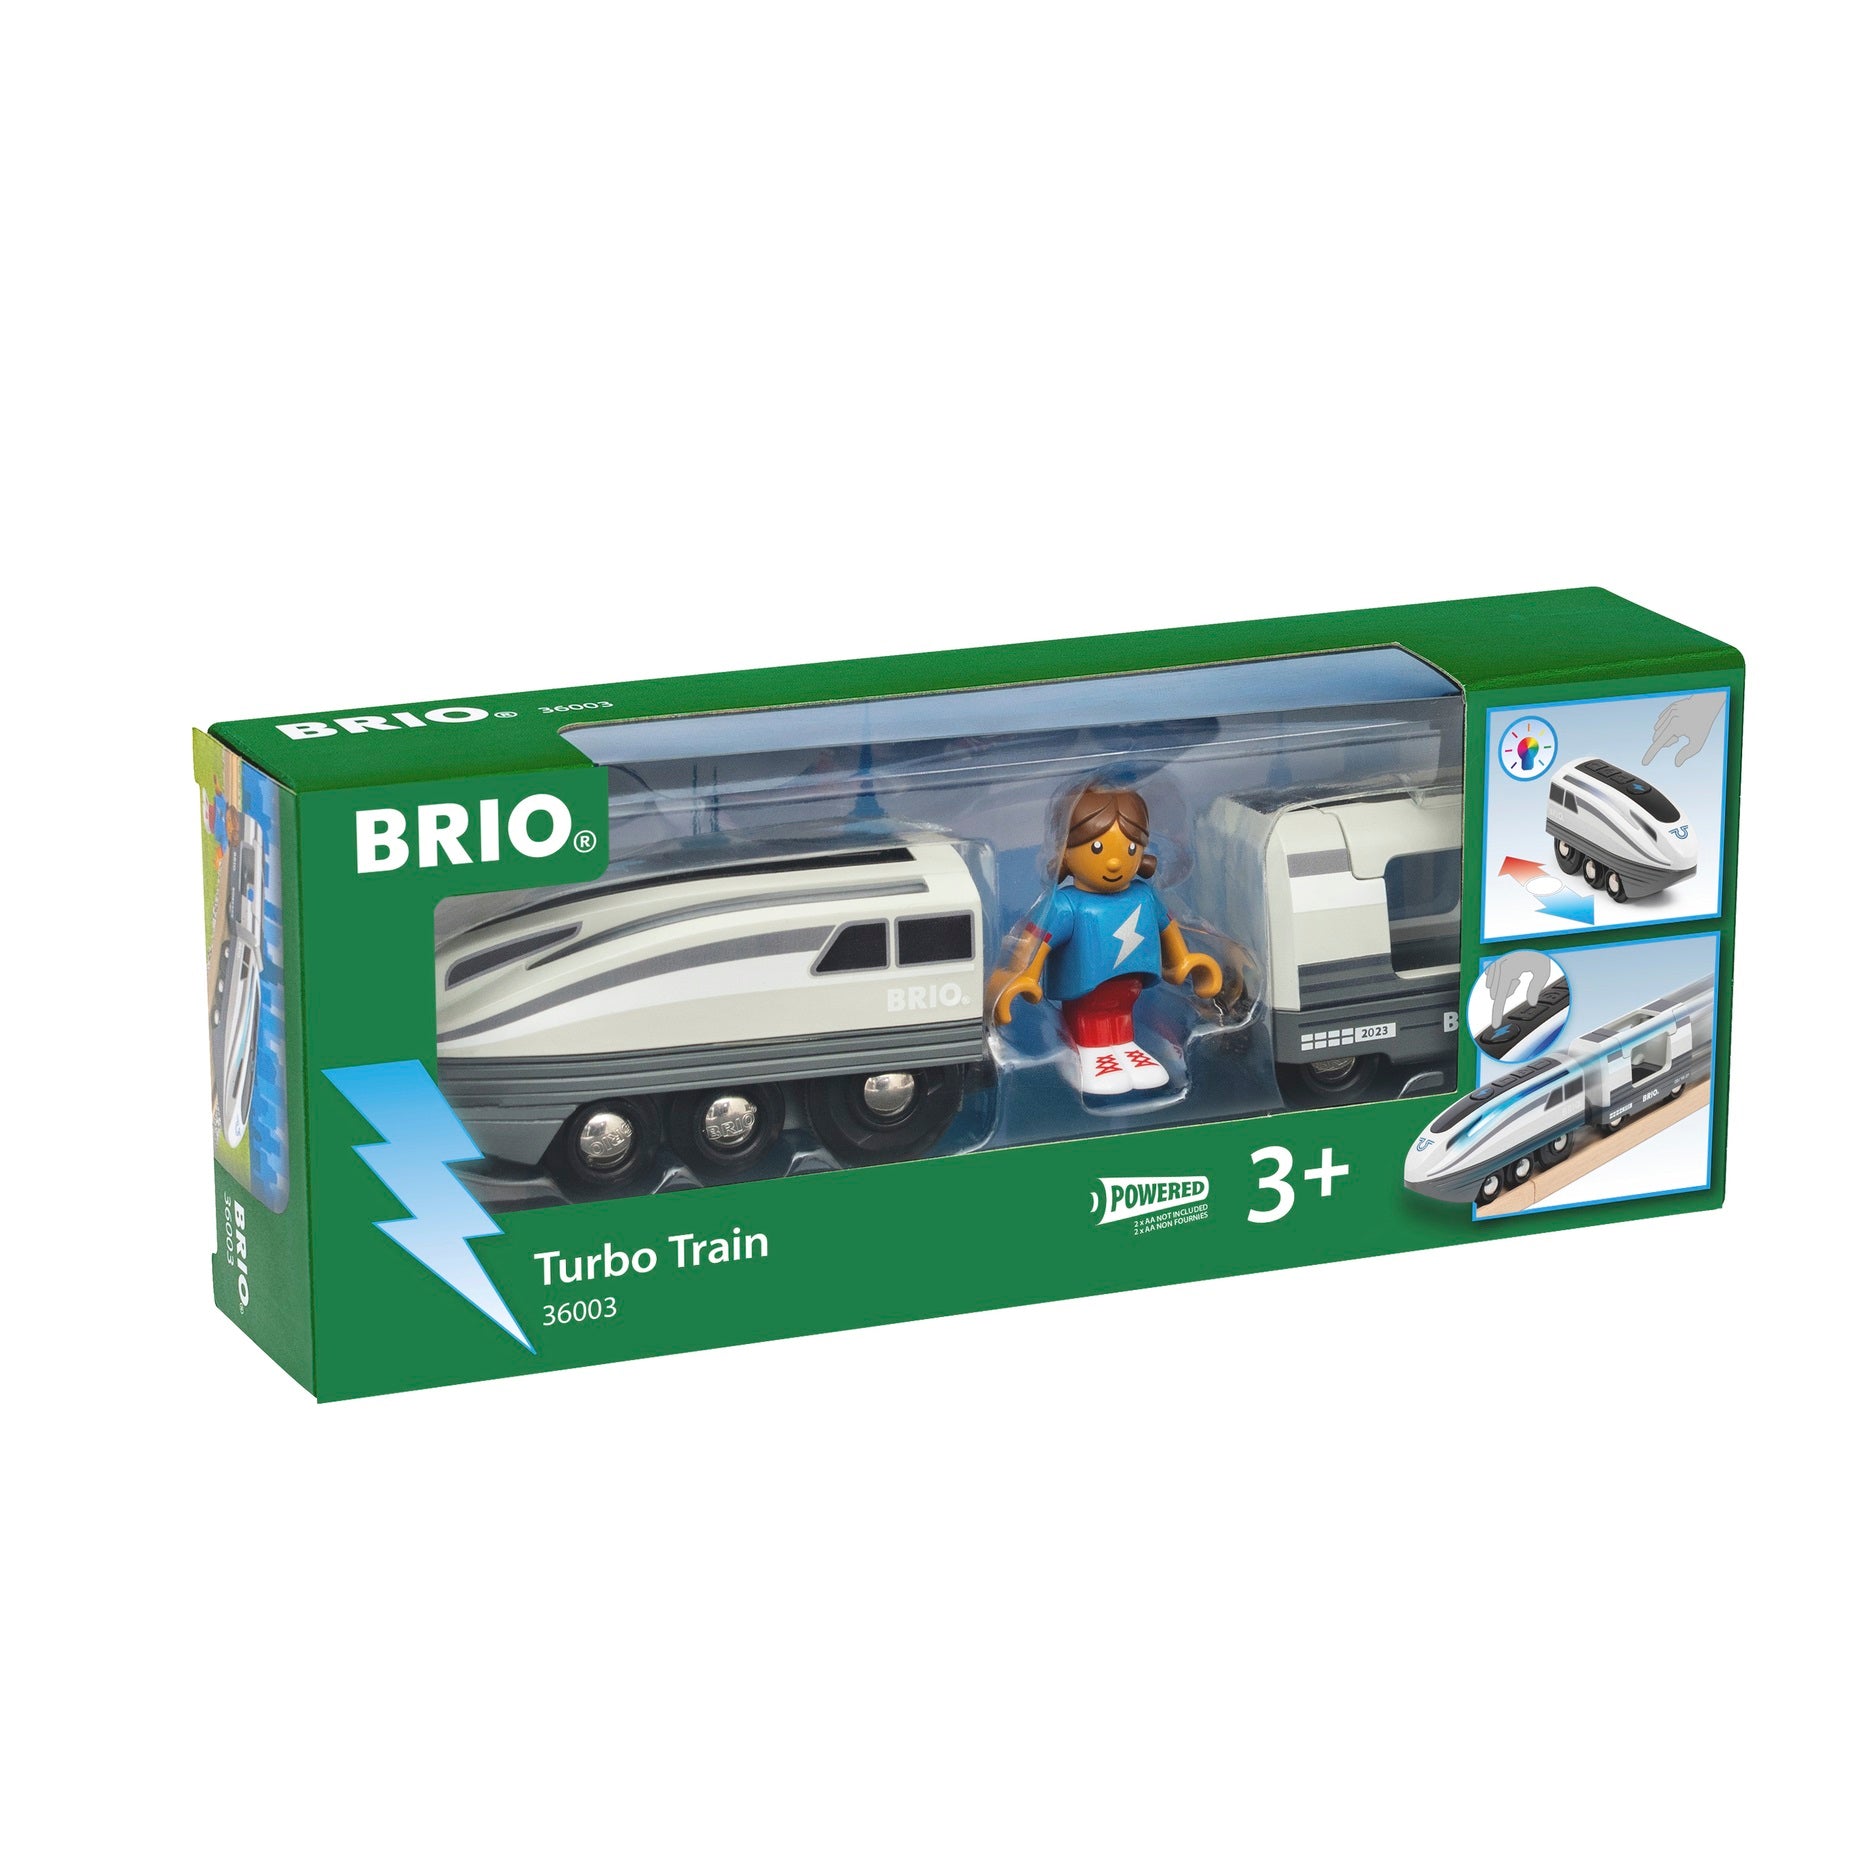 Brio 2023 Special Edition Train